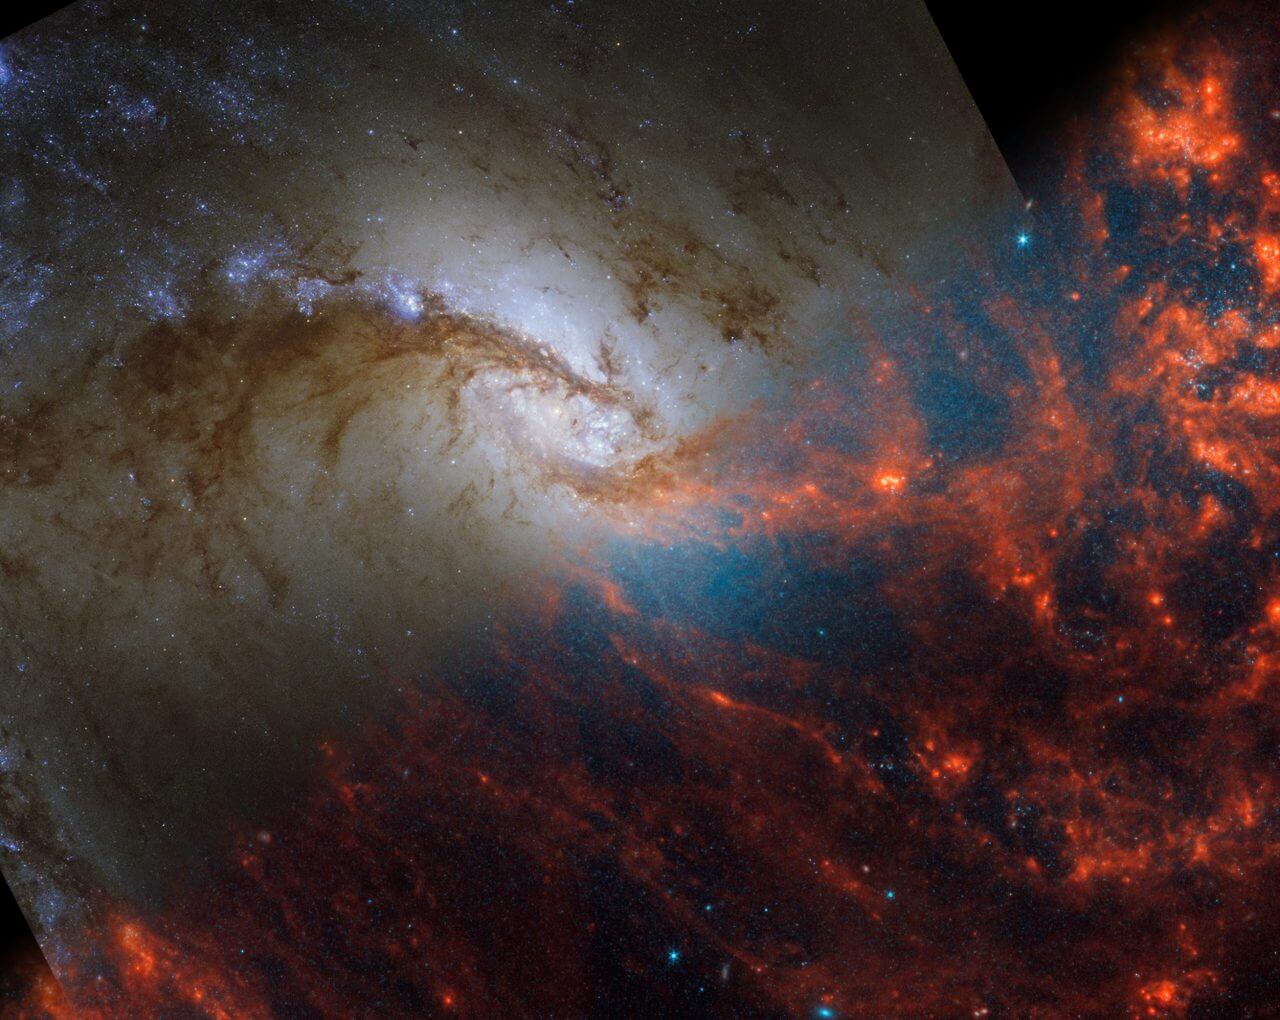 ウェッブとハッブル、2つの宇宙望遠鏡で観測した“ろ座”の銀河「NGC 1365」